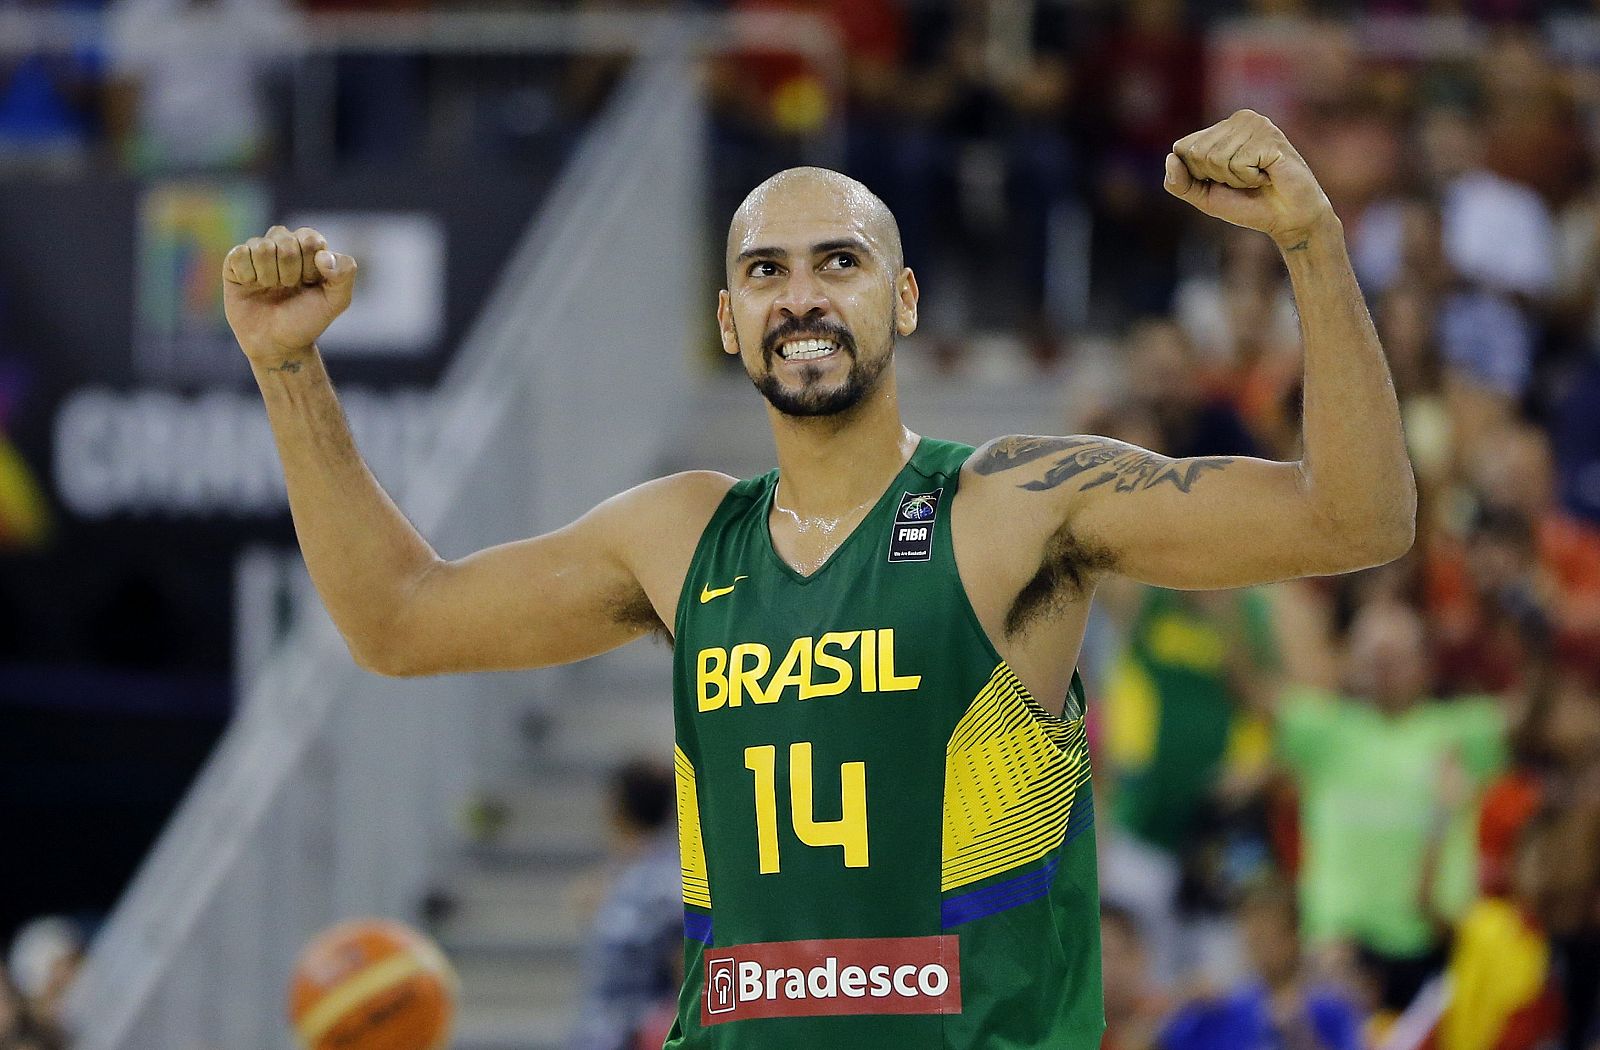 El alero de la selección de Brasil Marcus Vieira celebra el triunfo de su equipo ante Serbia